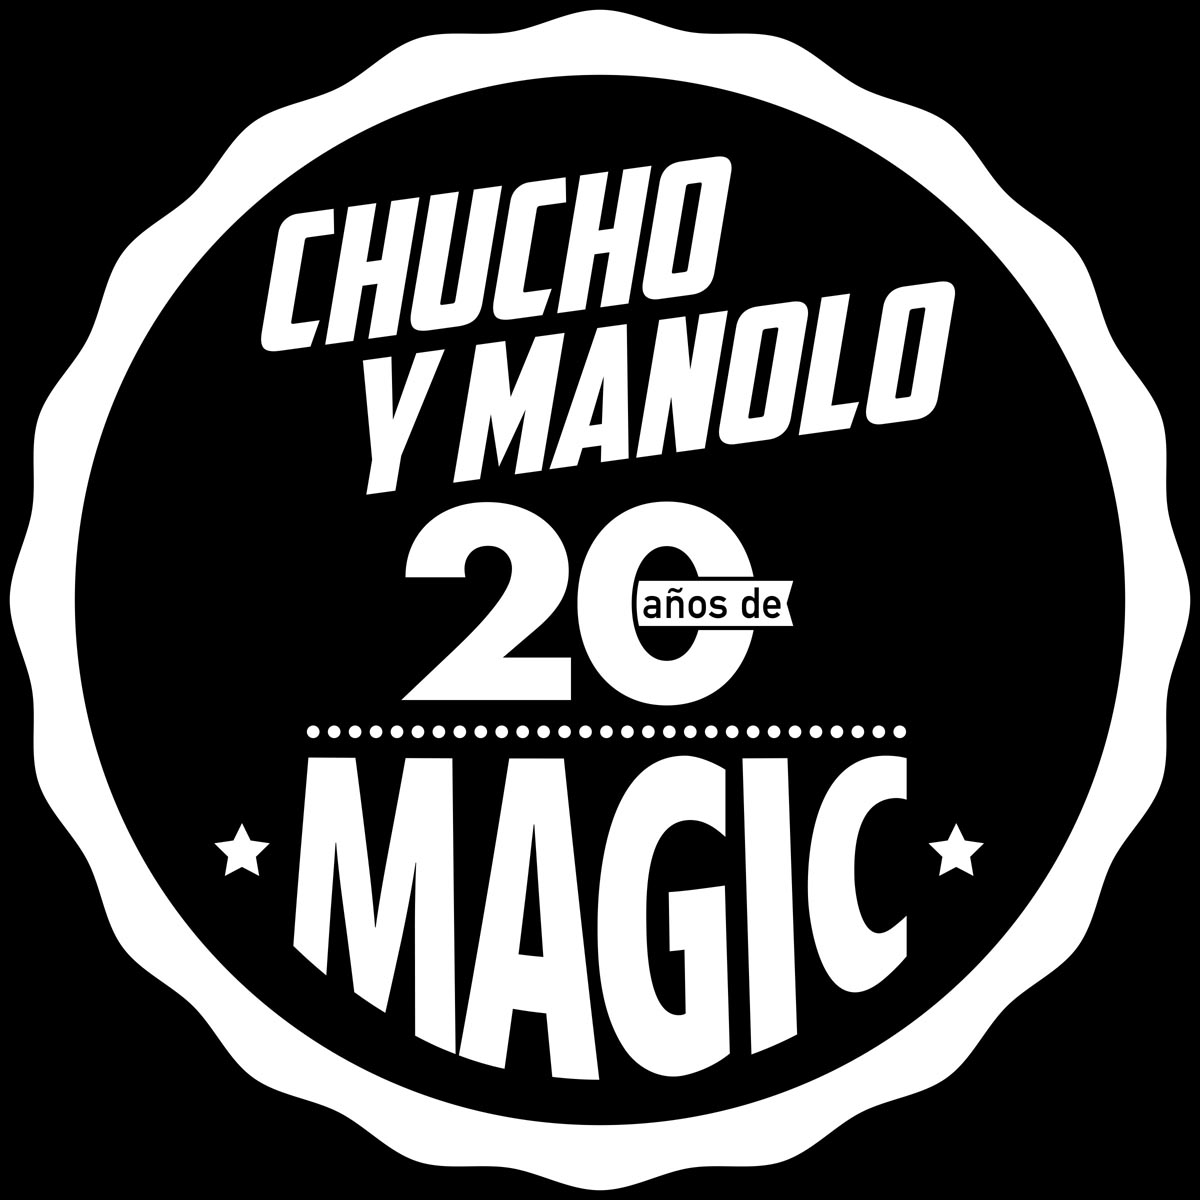 Magic 2019 (Chucho y Manolo)